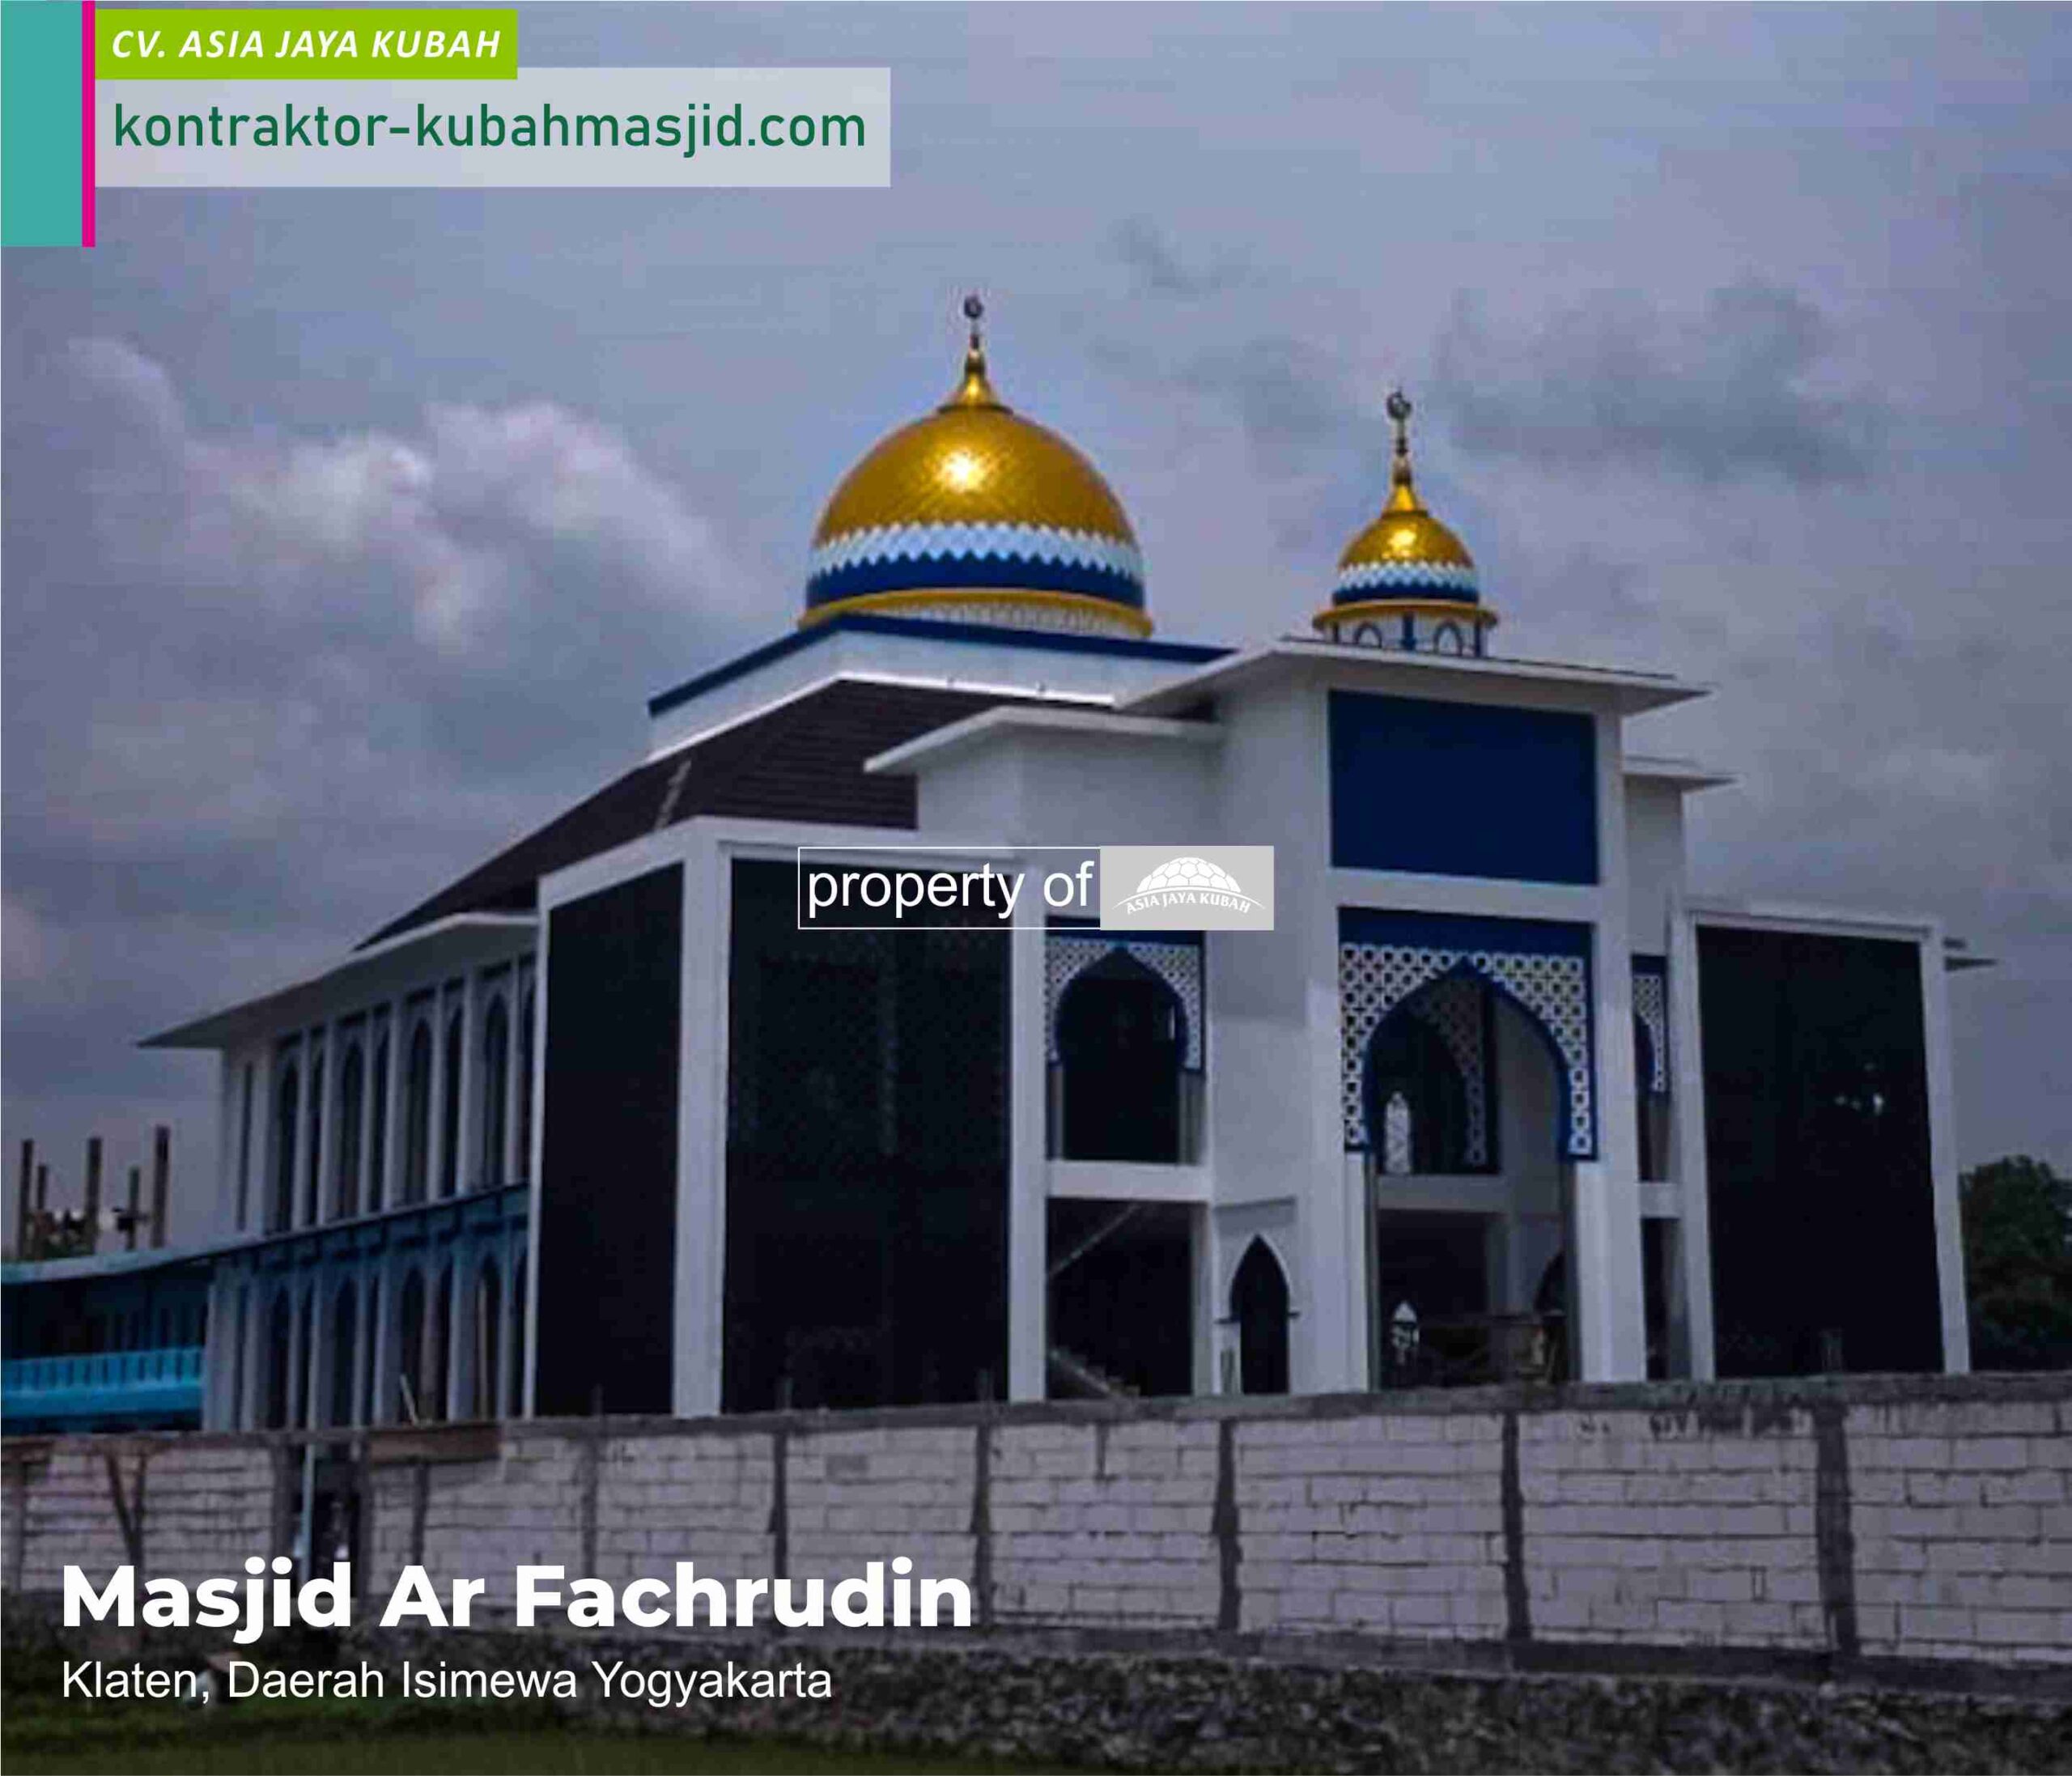 Harga Kubah Masjid Galvalum per meter di Ogan Komering Ulu Timur